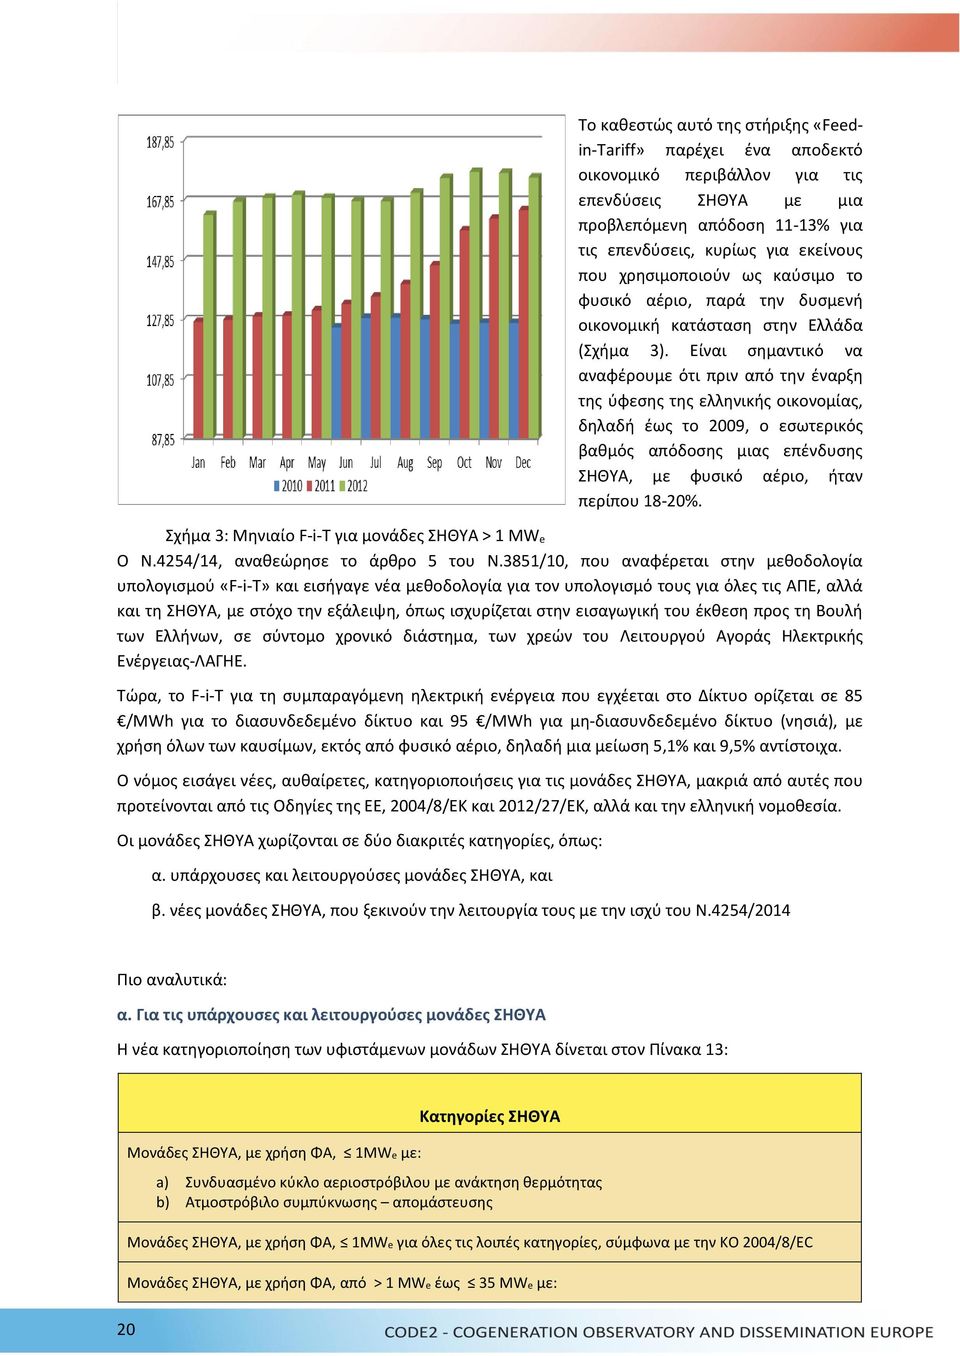 Είναι σημαντικό να αναφέρουμε ότι πριν από την έναρξη της ύφεσης της ελληνικής οικονομίας, δηλαδή έως το 2009, ο εσωτερικός βαθμός απόδοσης μιας επένδυσης ΣΗΘΥΑ, με φυσικό αέριο, ήταν περίπου 18-20%.